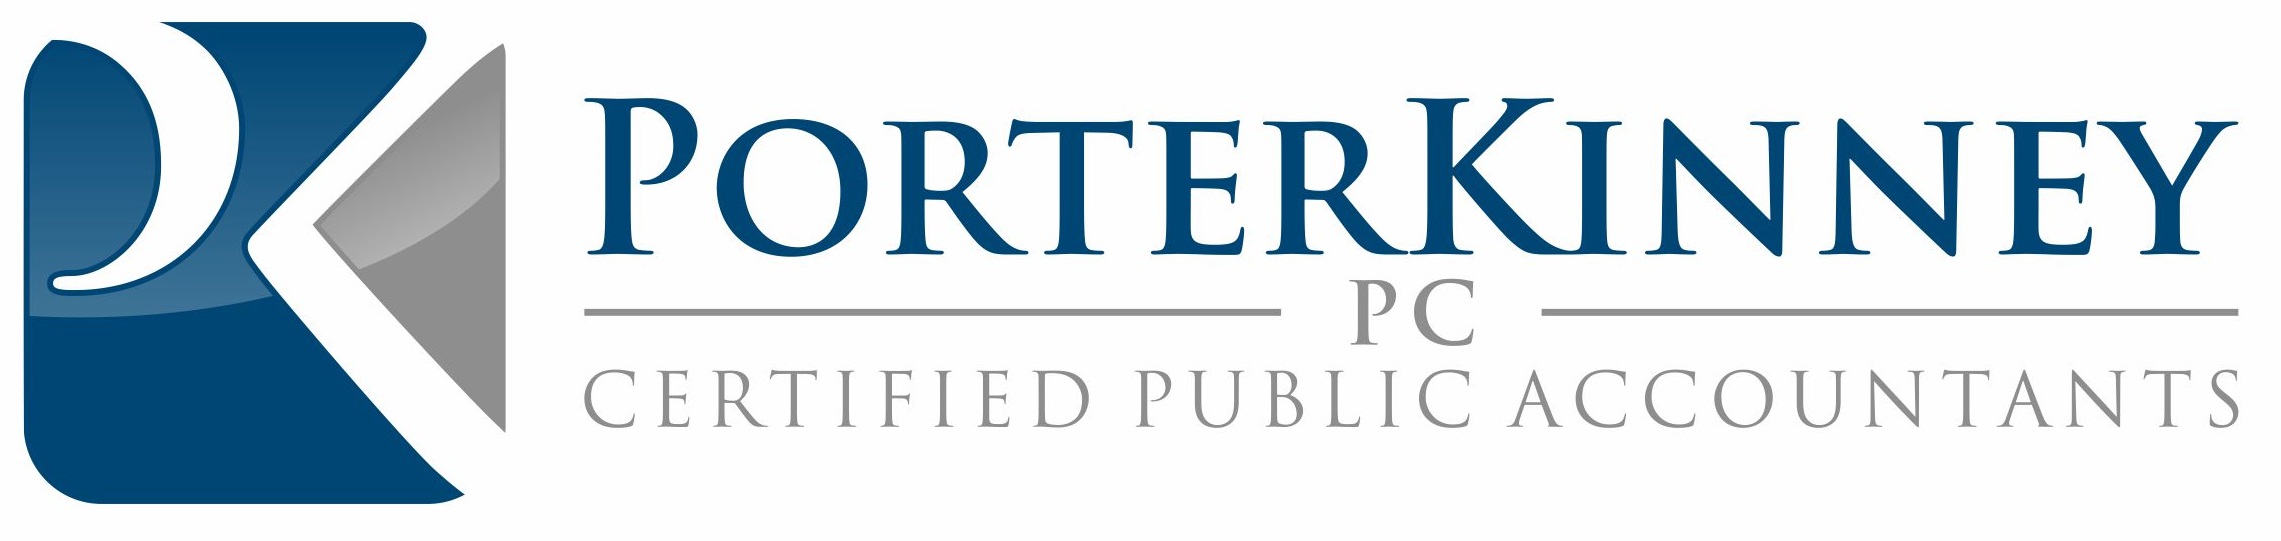 PorterKinney Certified Public Accountants